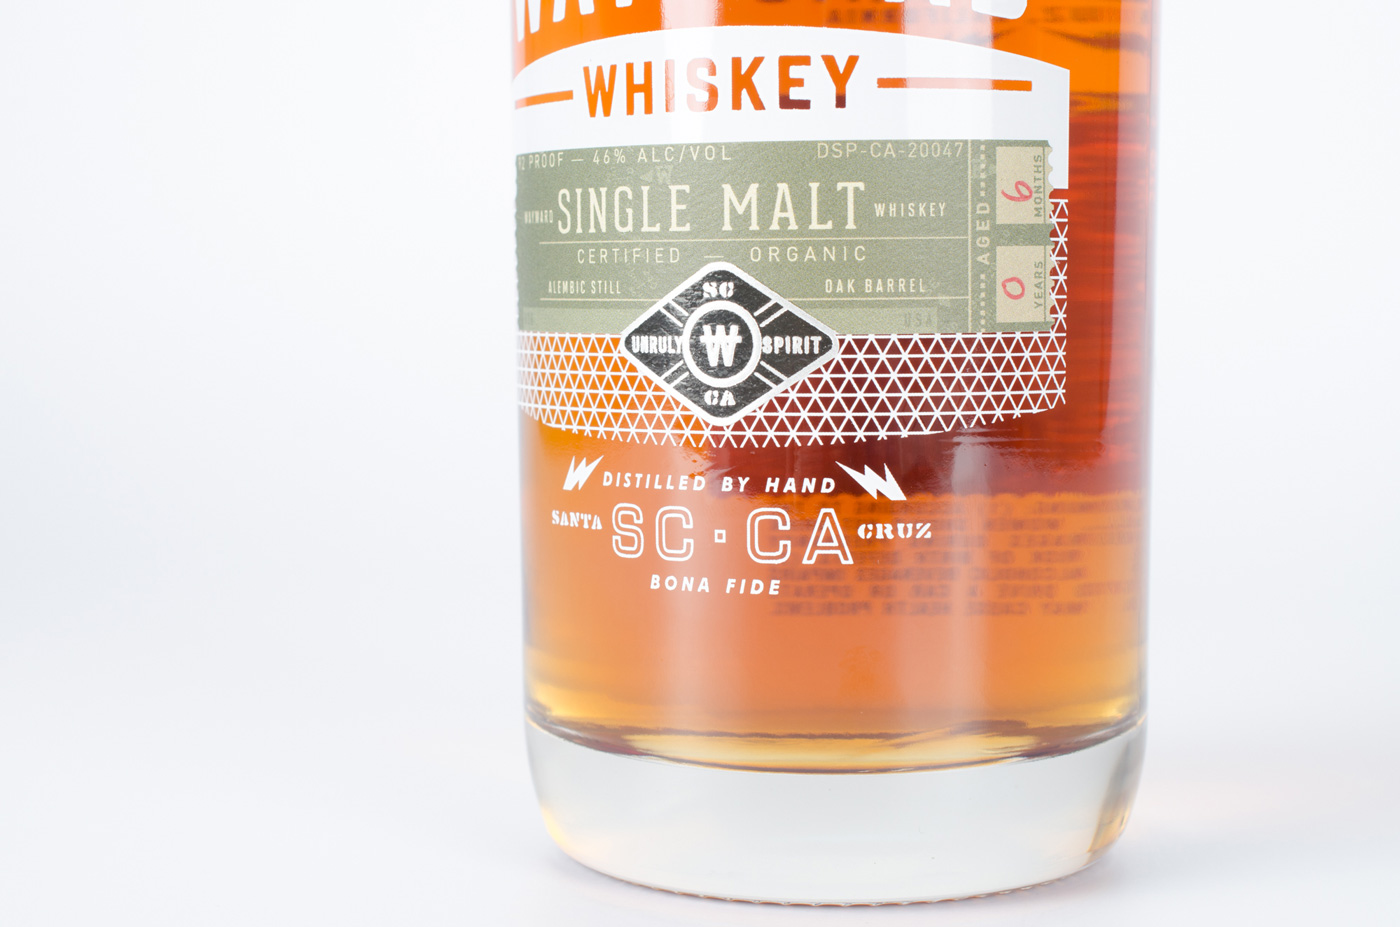 Wayward Whiskey packaging detail